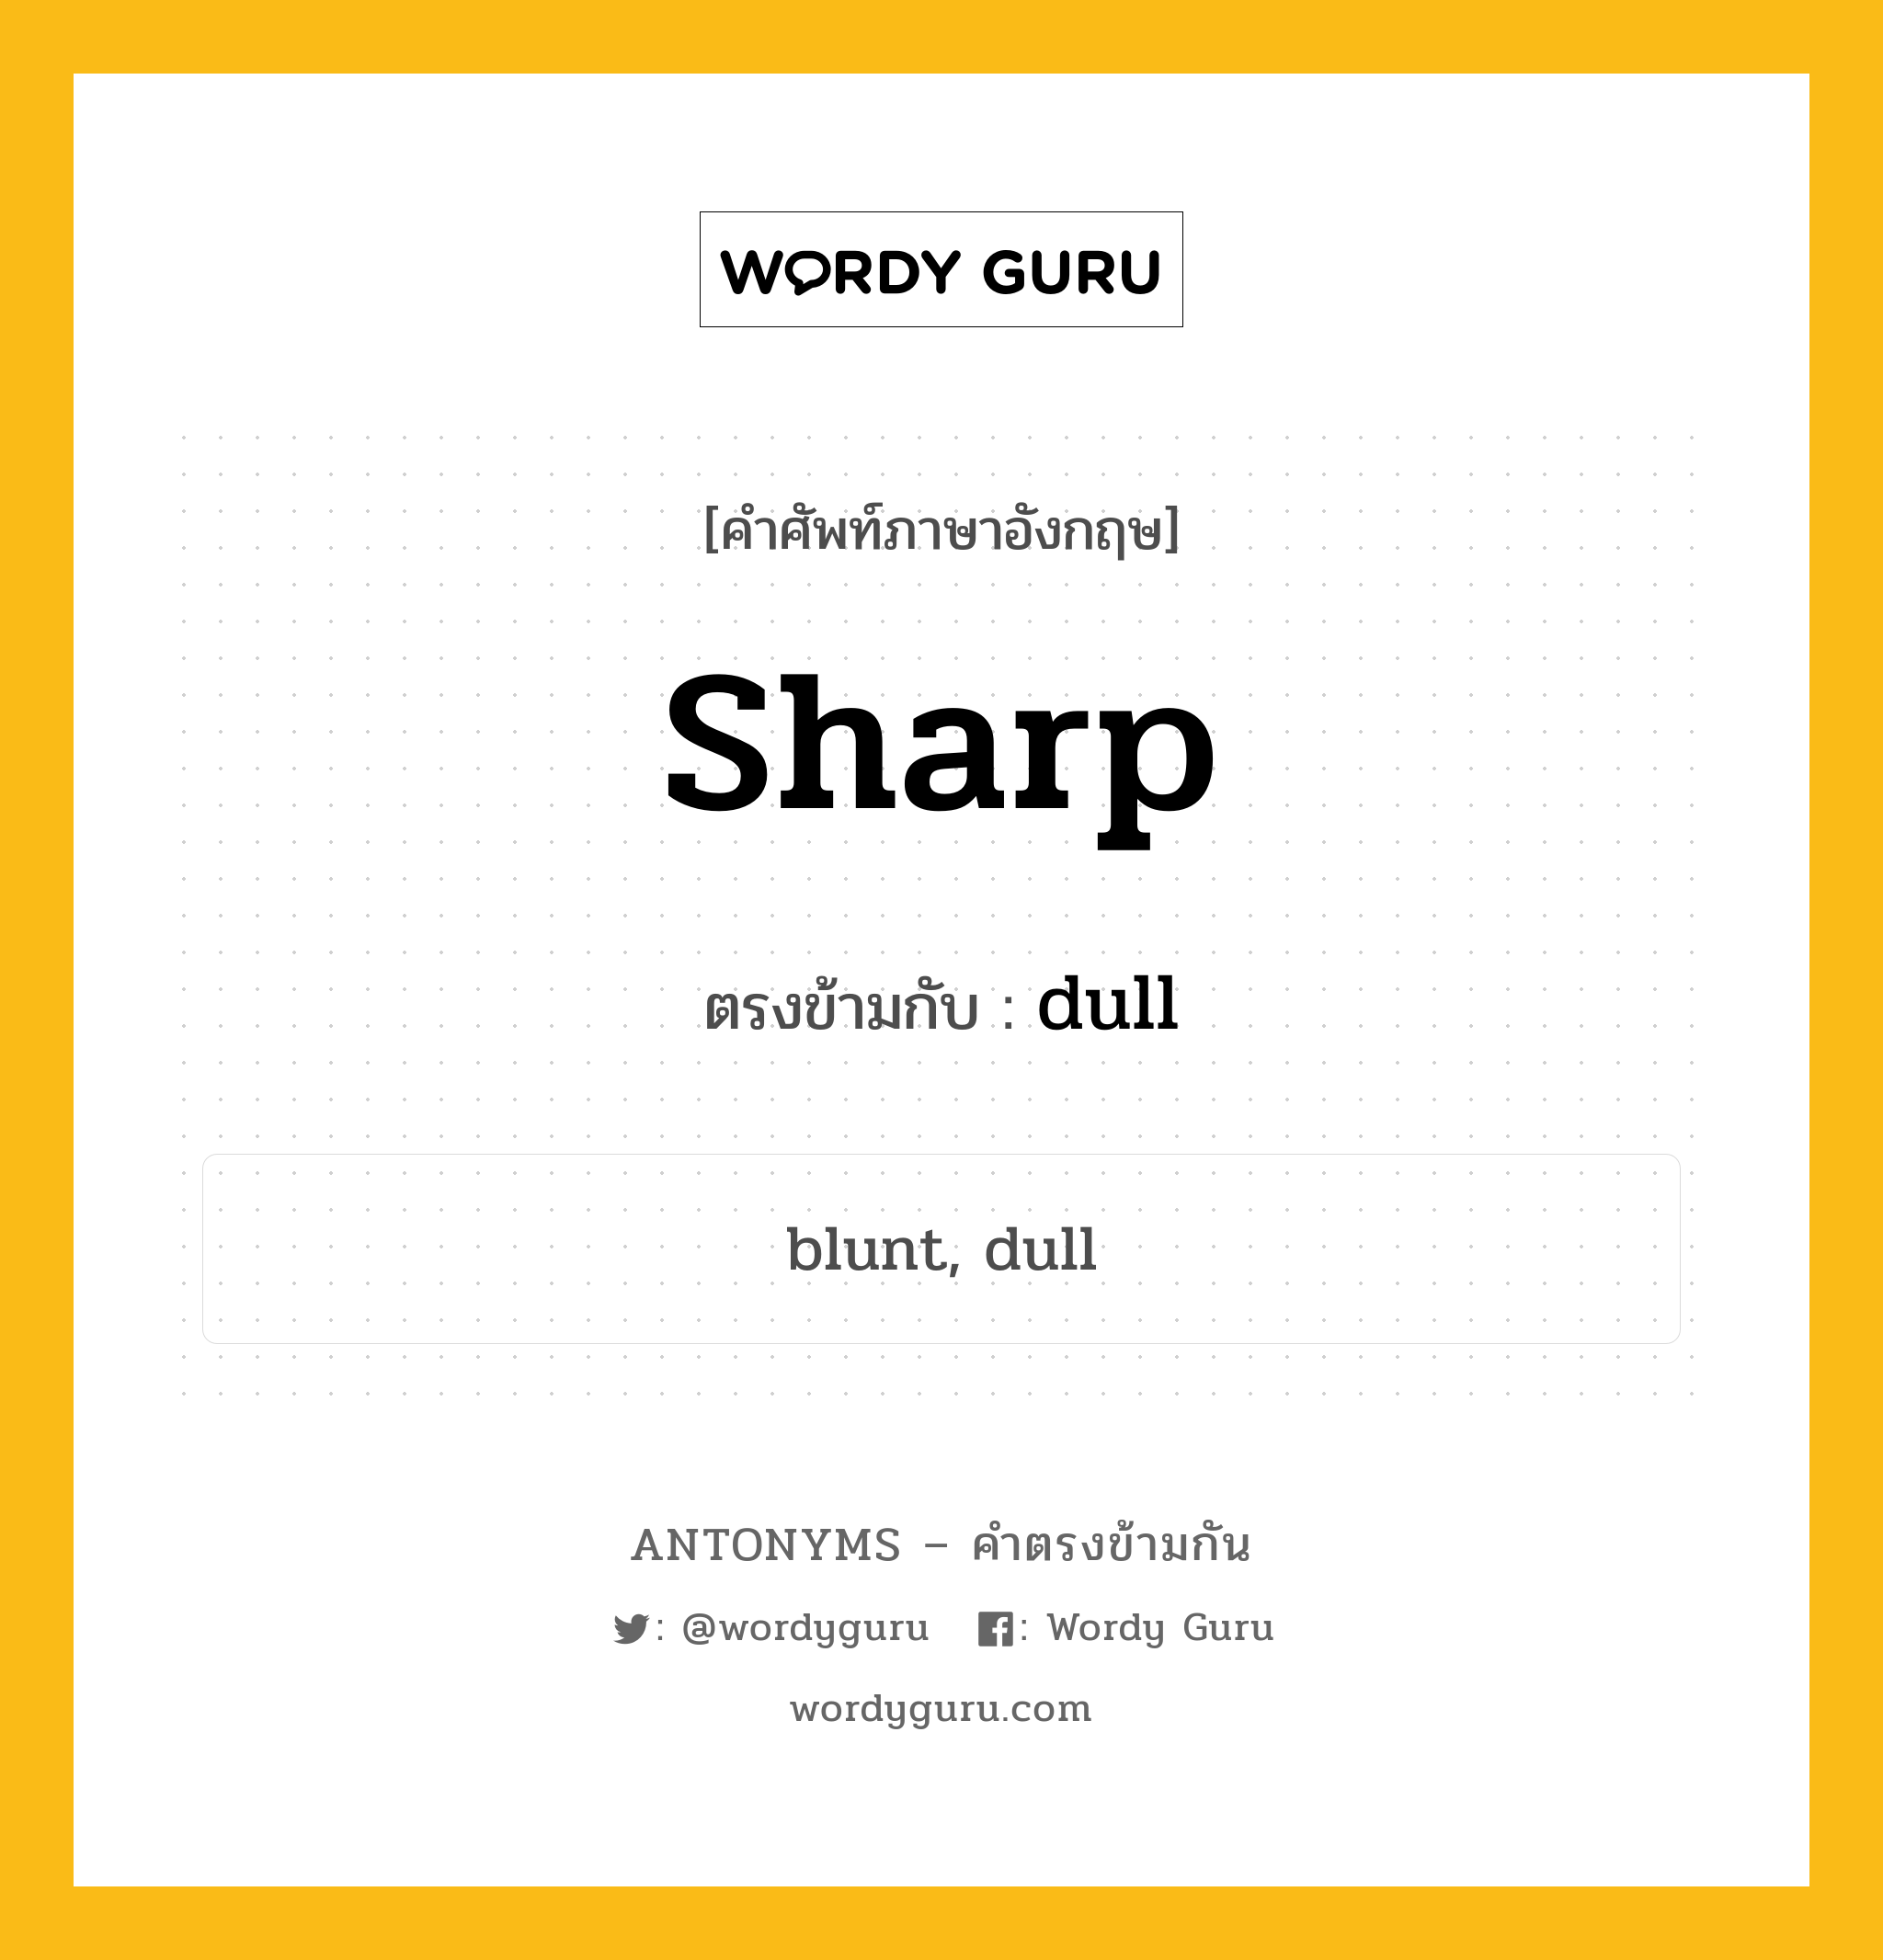 sharp เป็นคำตรงข้ามกับคำไหนบ้าง?, คำศัพท์ภาษาอังกฤษ sharp ตรงข้ามกับ dull หมวด dull